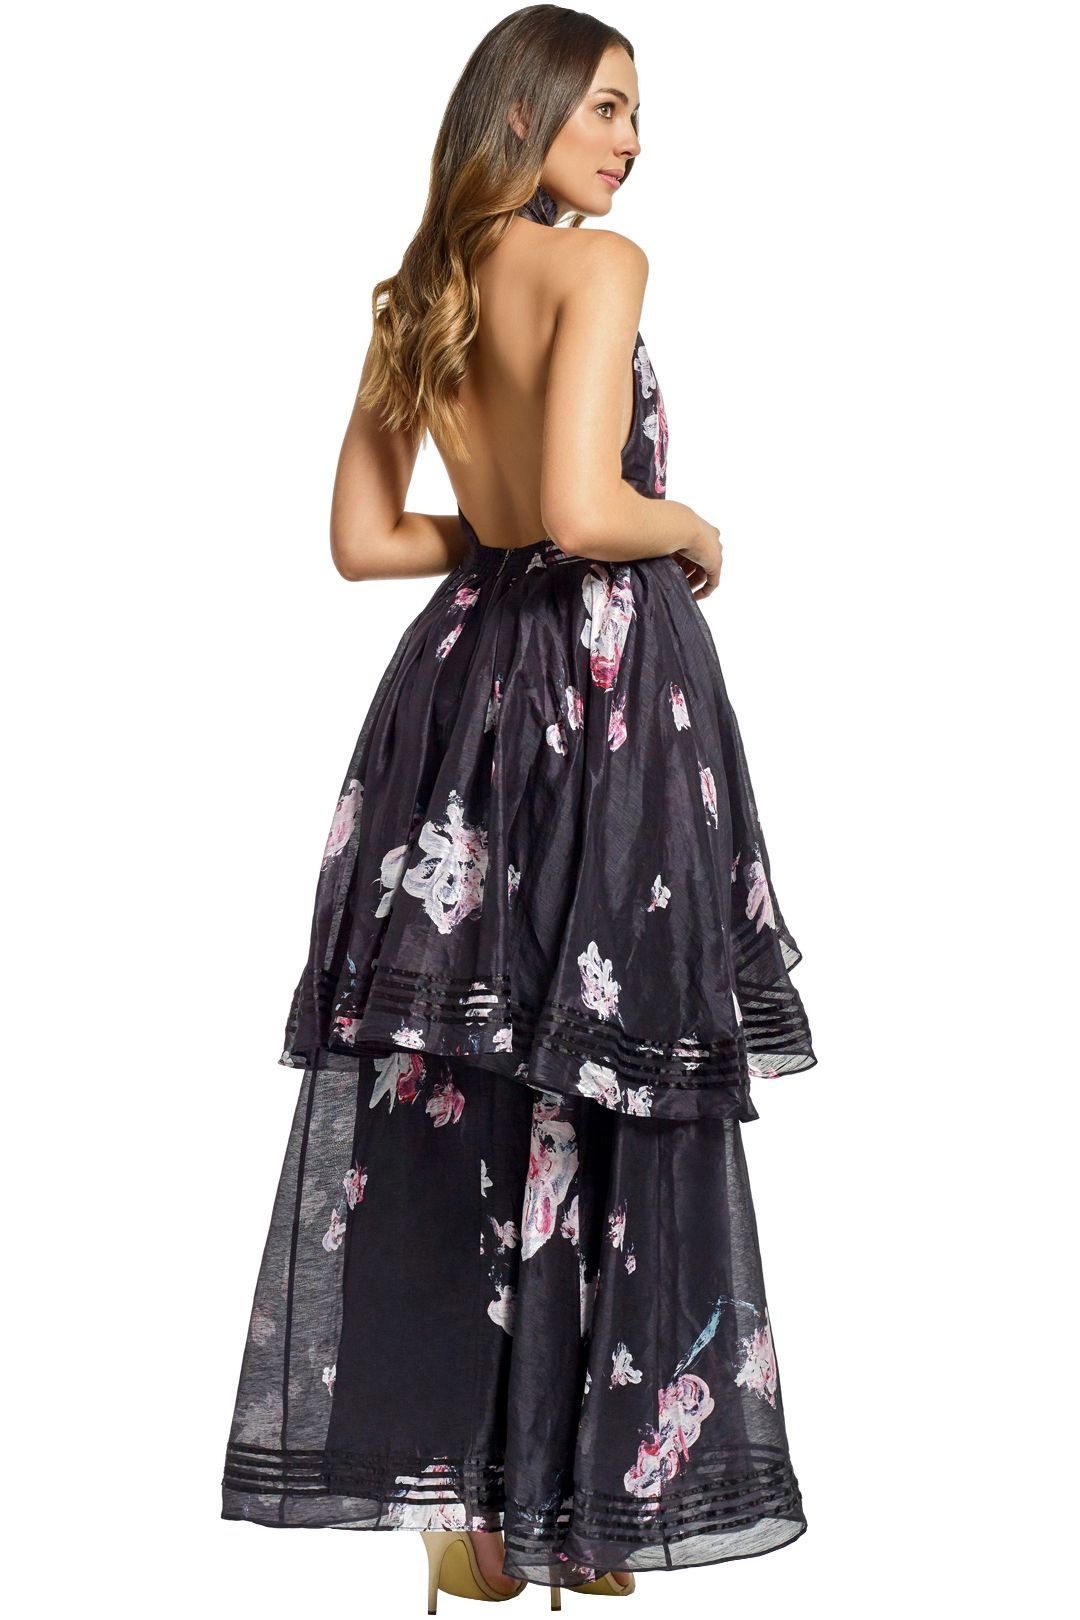 Aje - Sienna Dress - Black Floral - Back